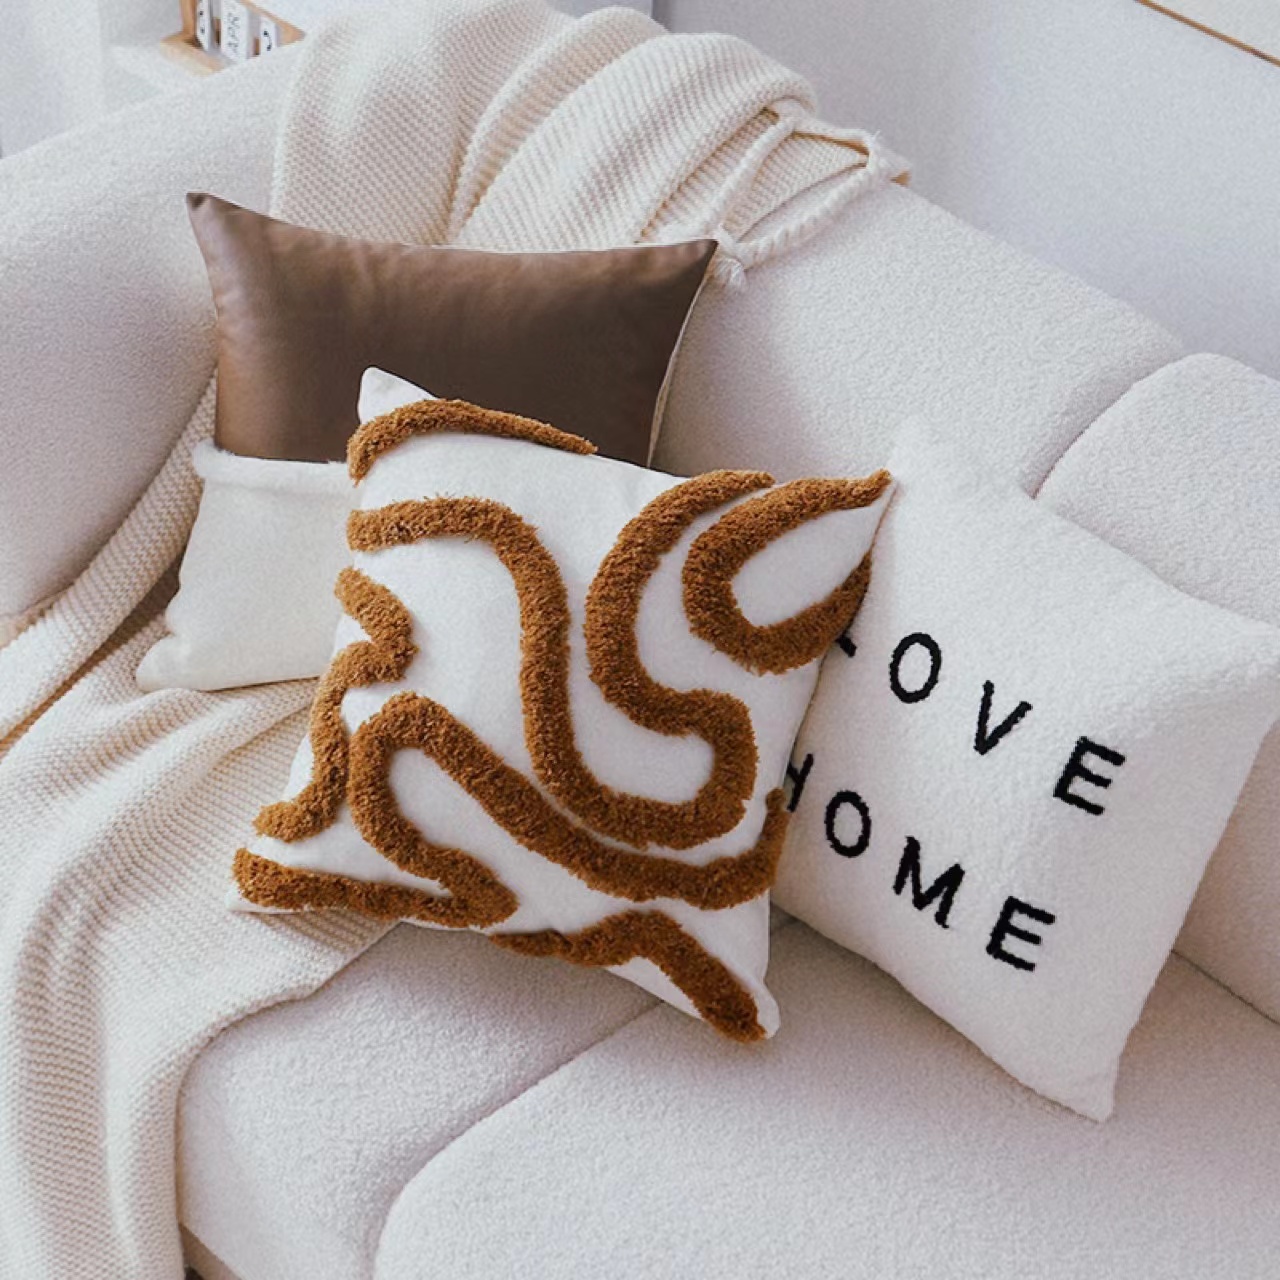 簡約現代風格客廳沙發抱枕套北歐風奶油色軟裝樣板房靠墊枕